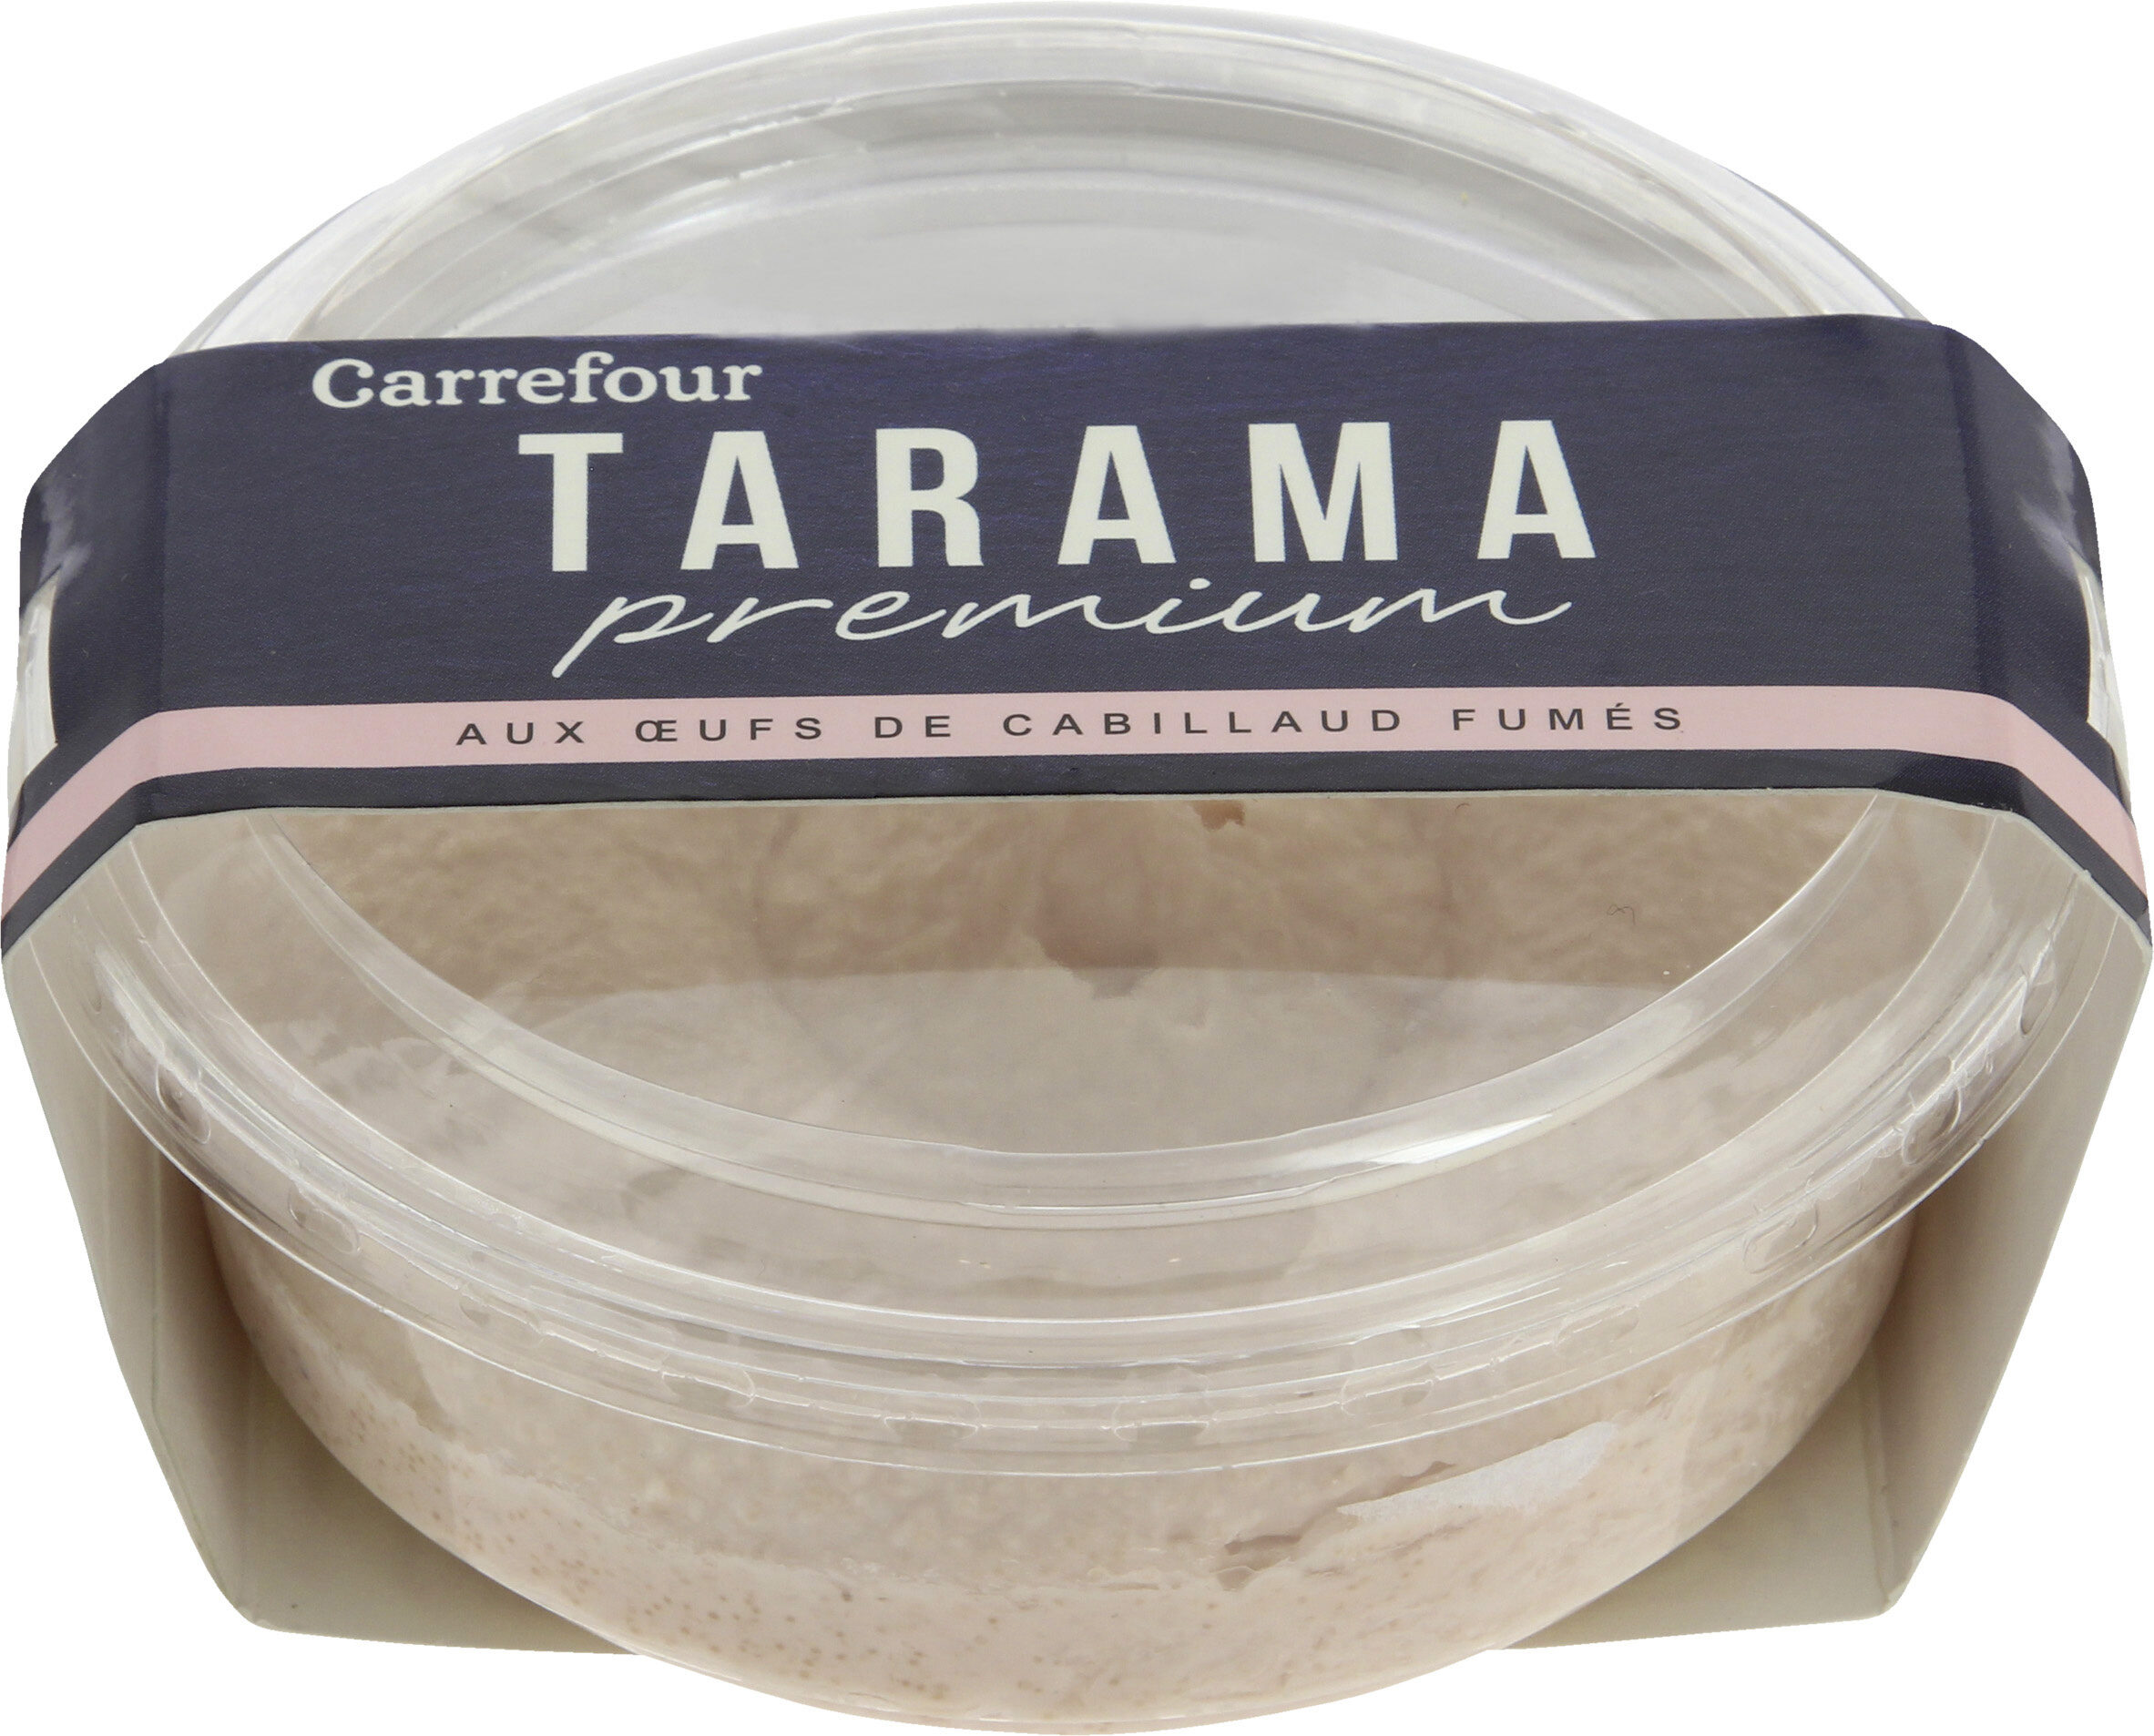 Tarama extra - Product - fr